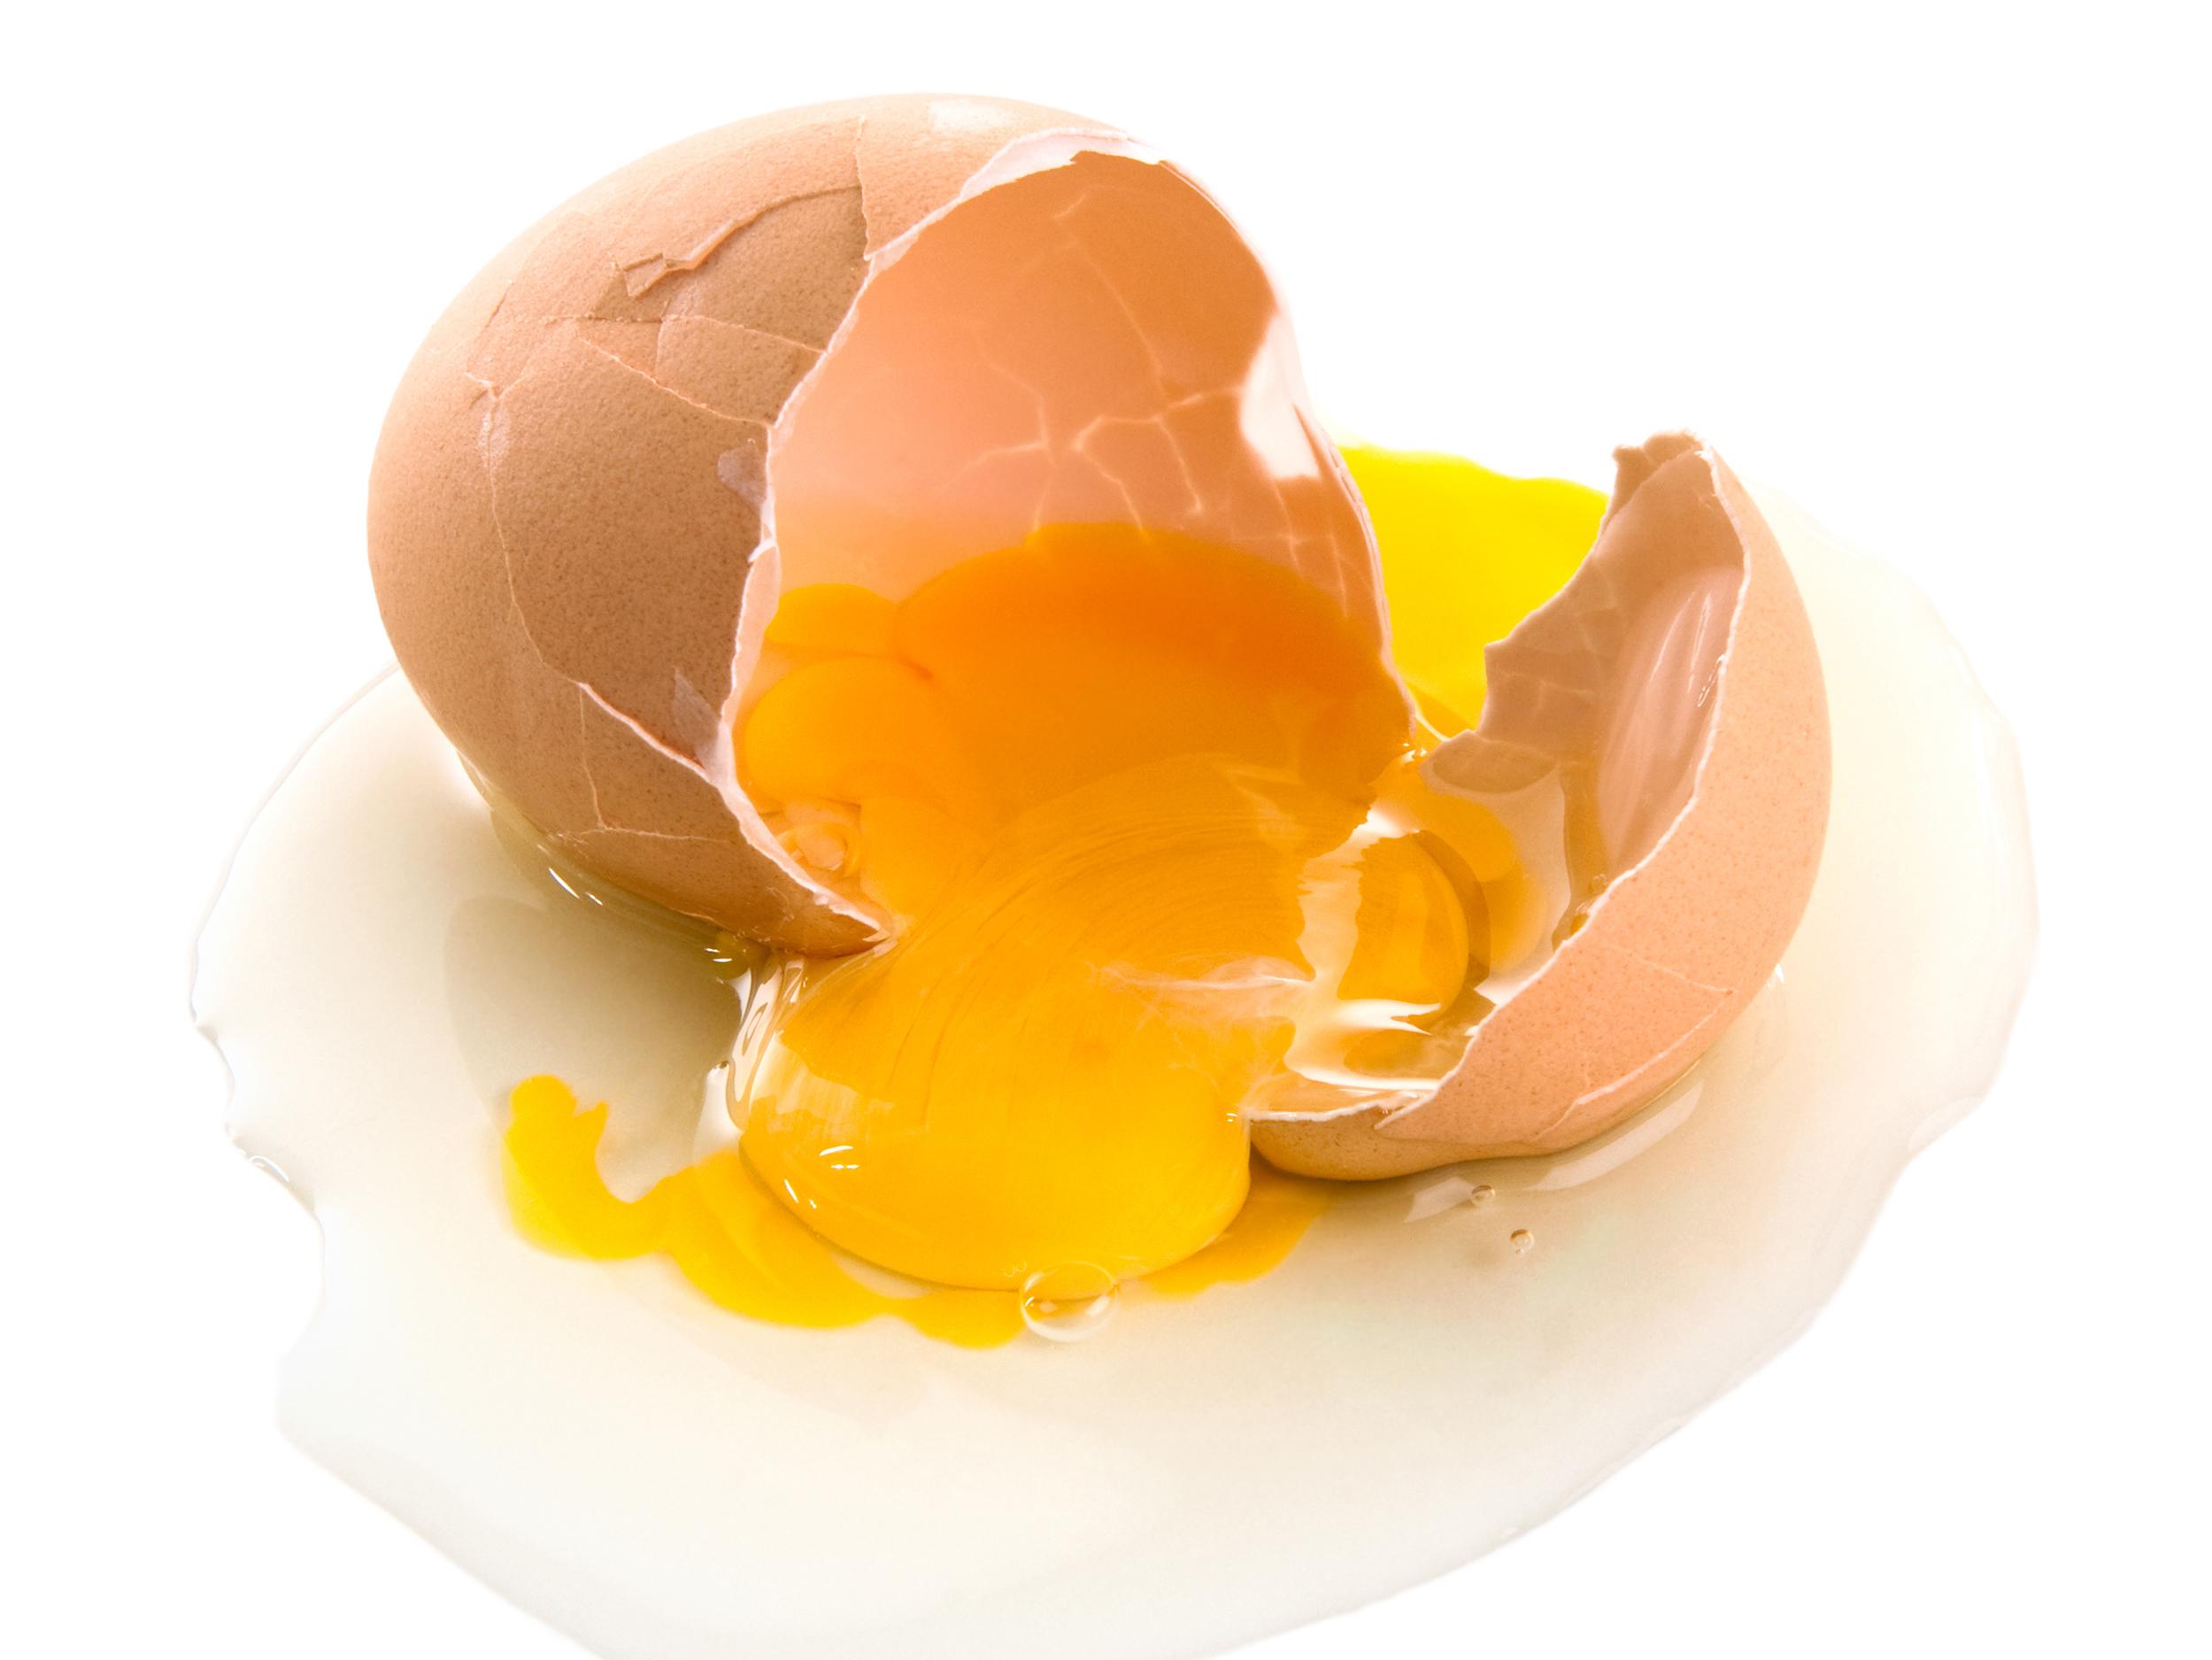 Túlkun draums um að brjóta egg